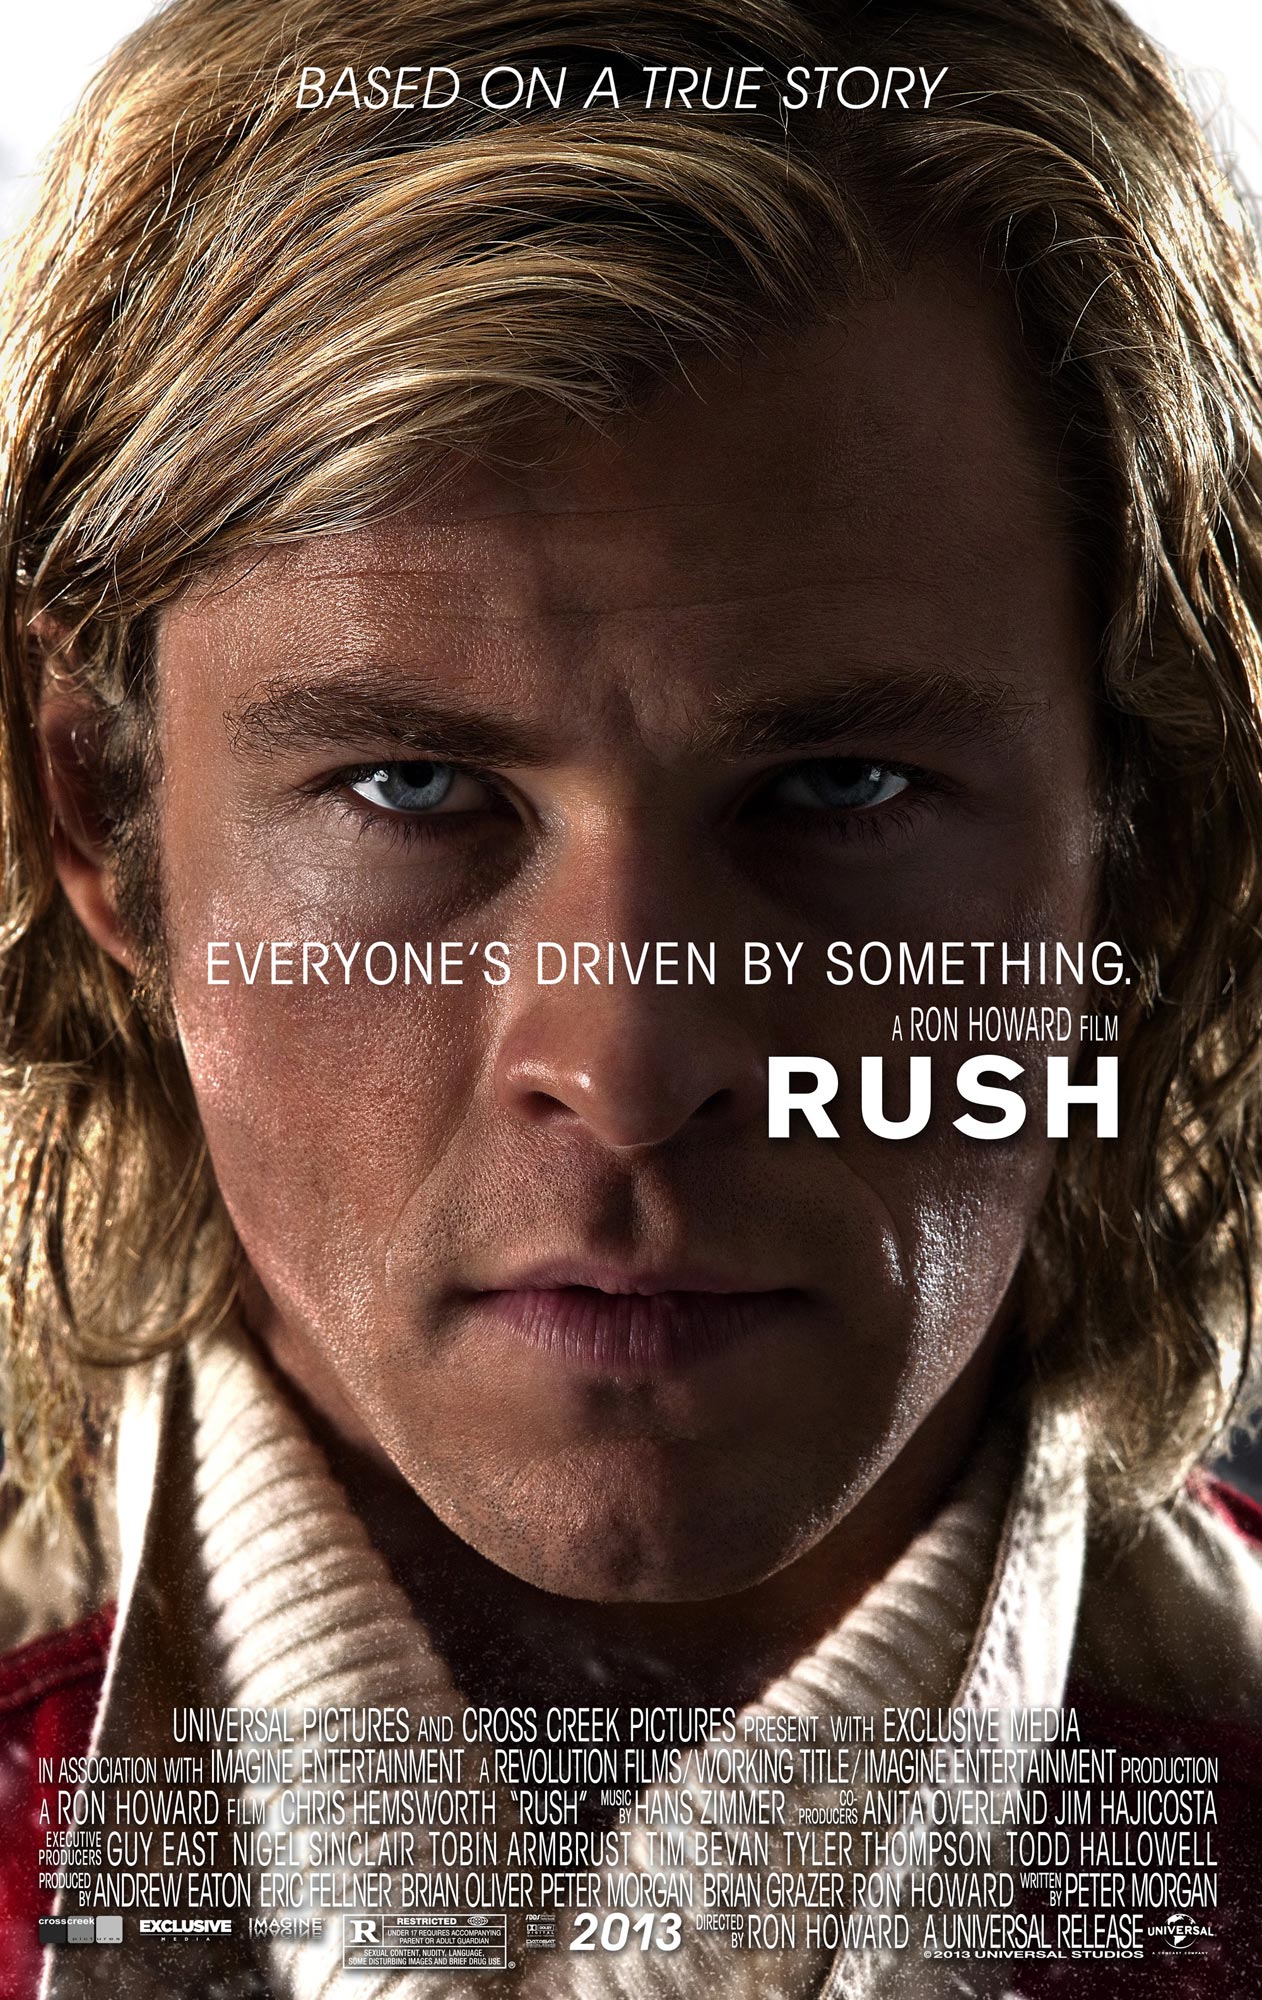 RUSH Movie Photos and Posters - MovieProNews